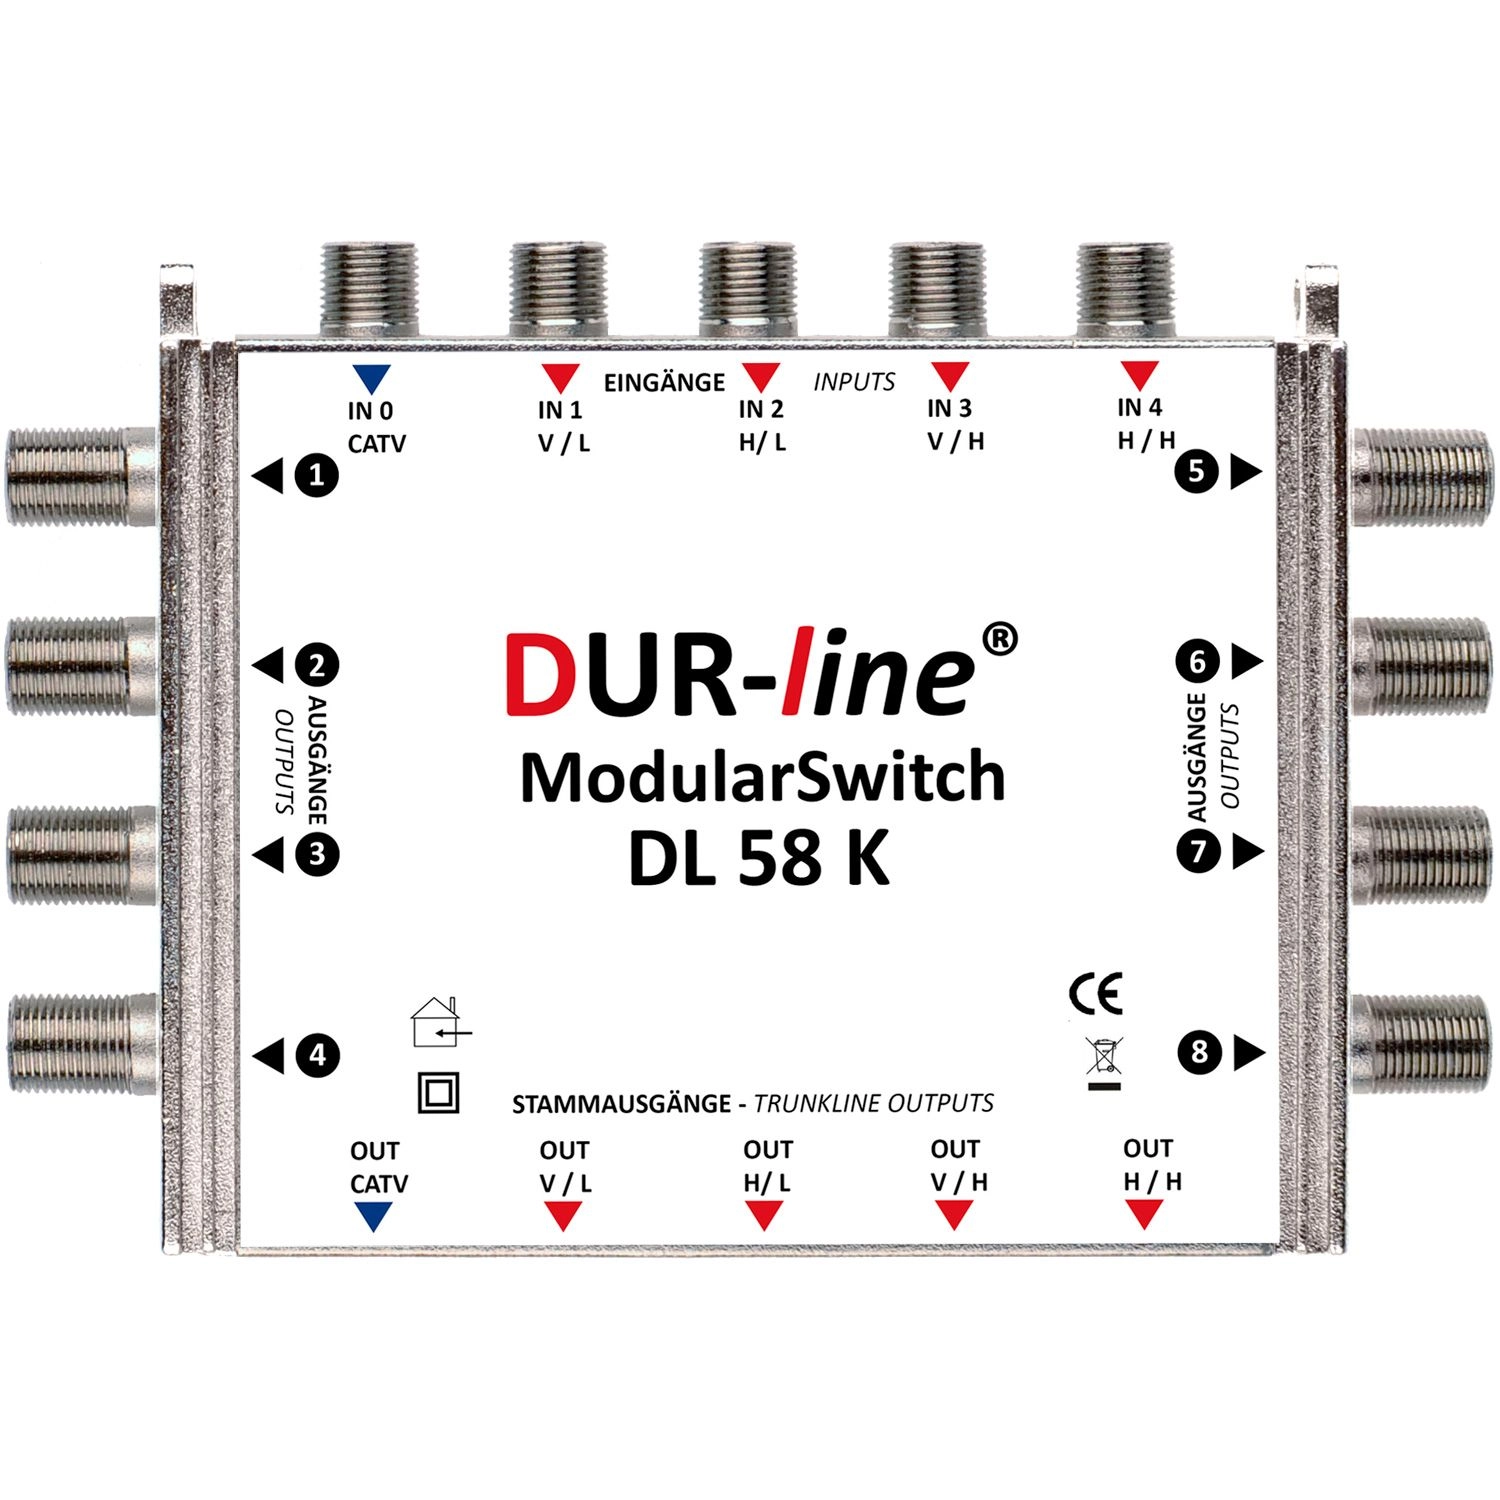 DUR-line ModularSwitch DL 58 K - Multischalter